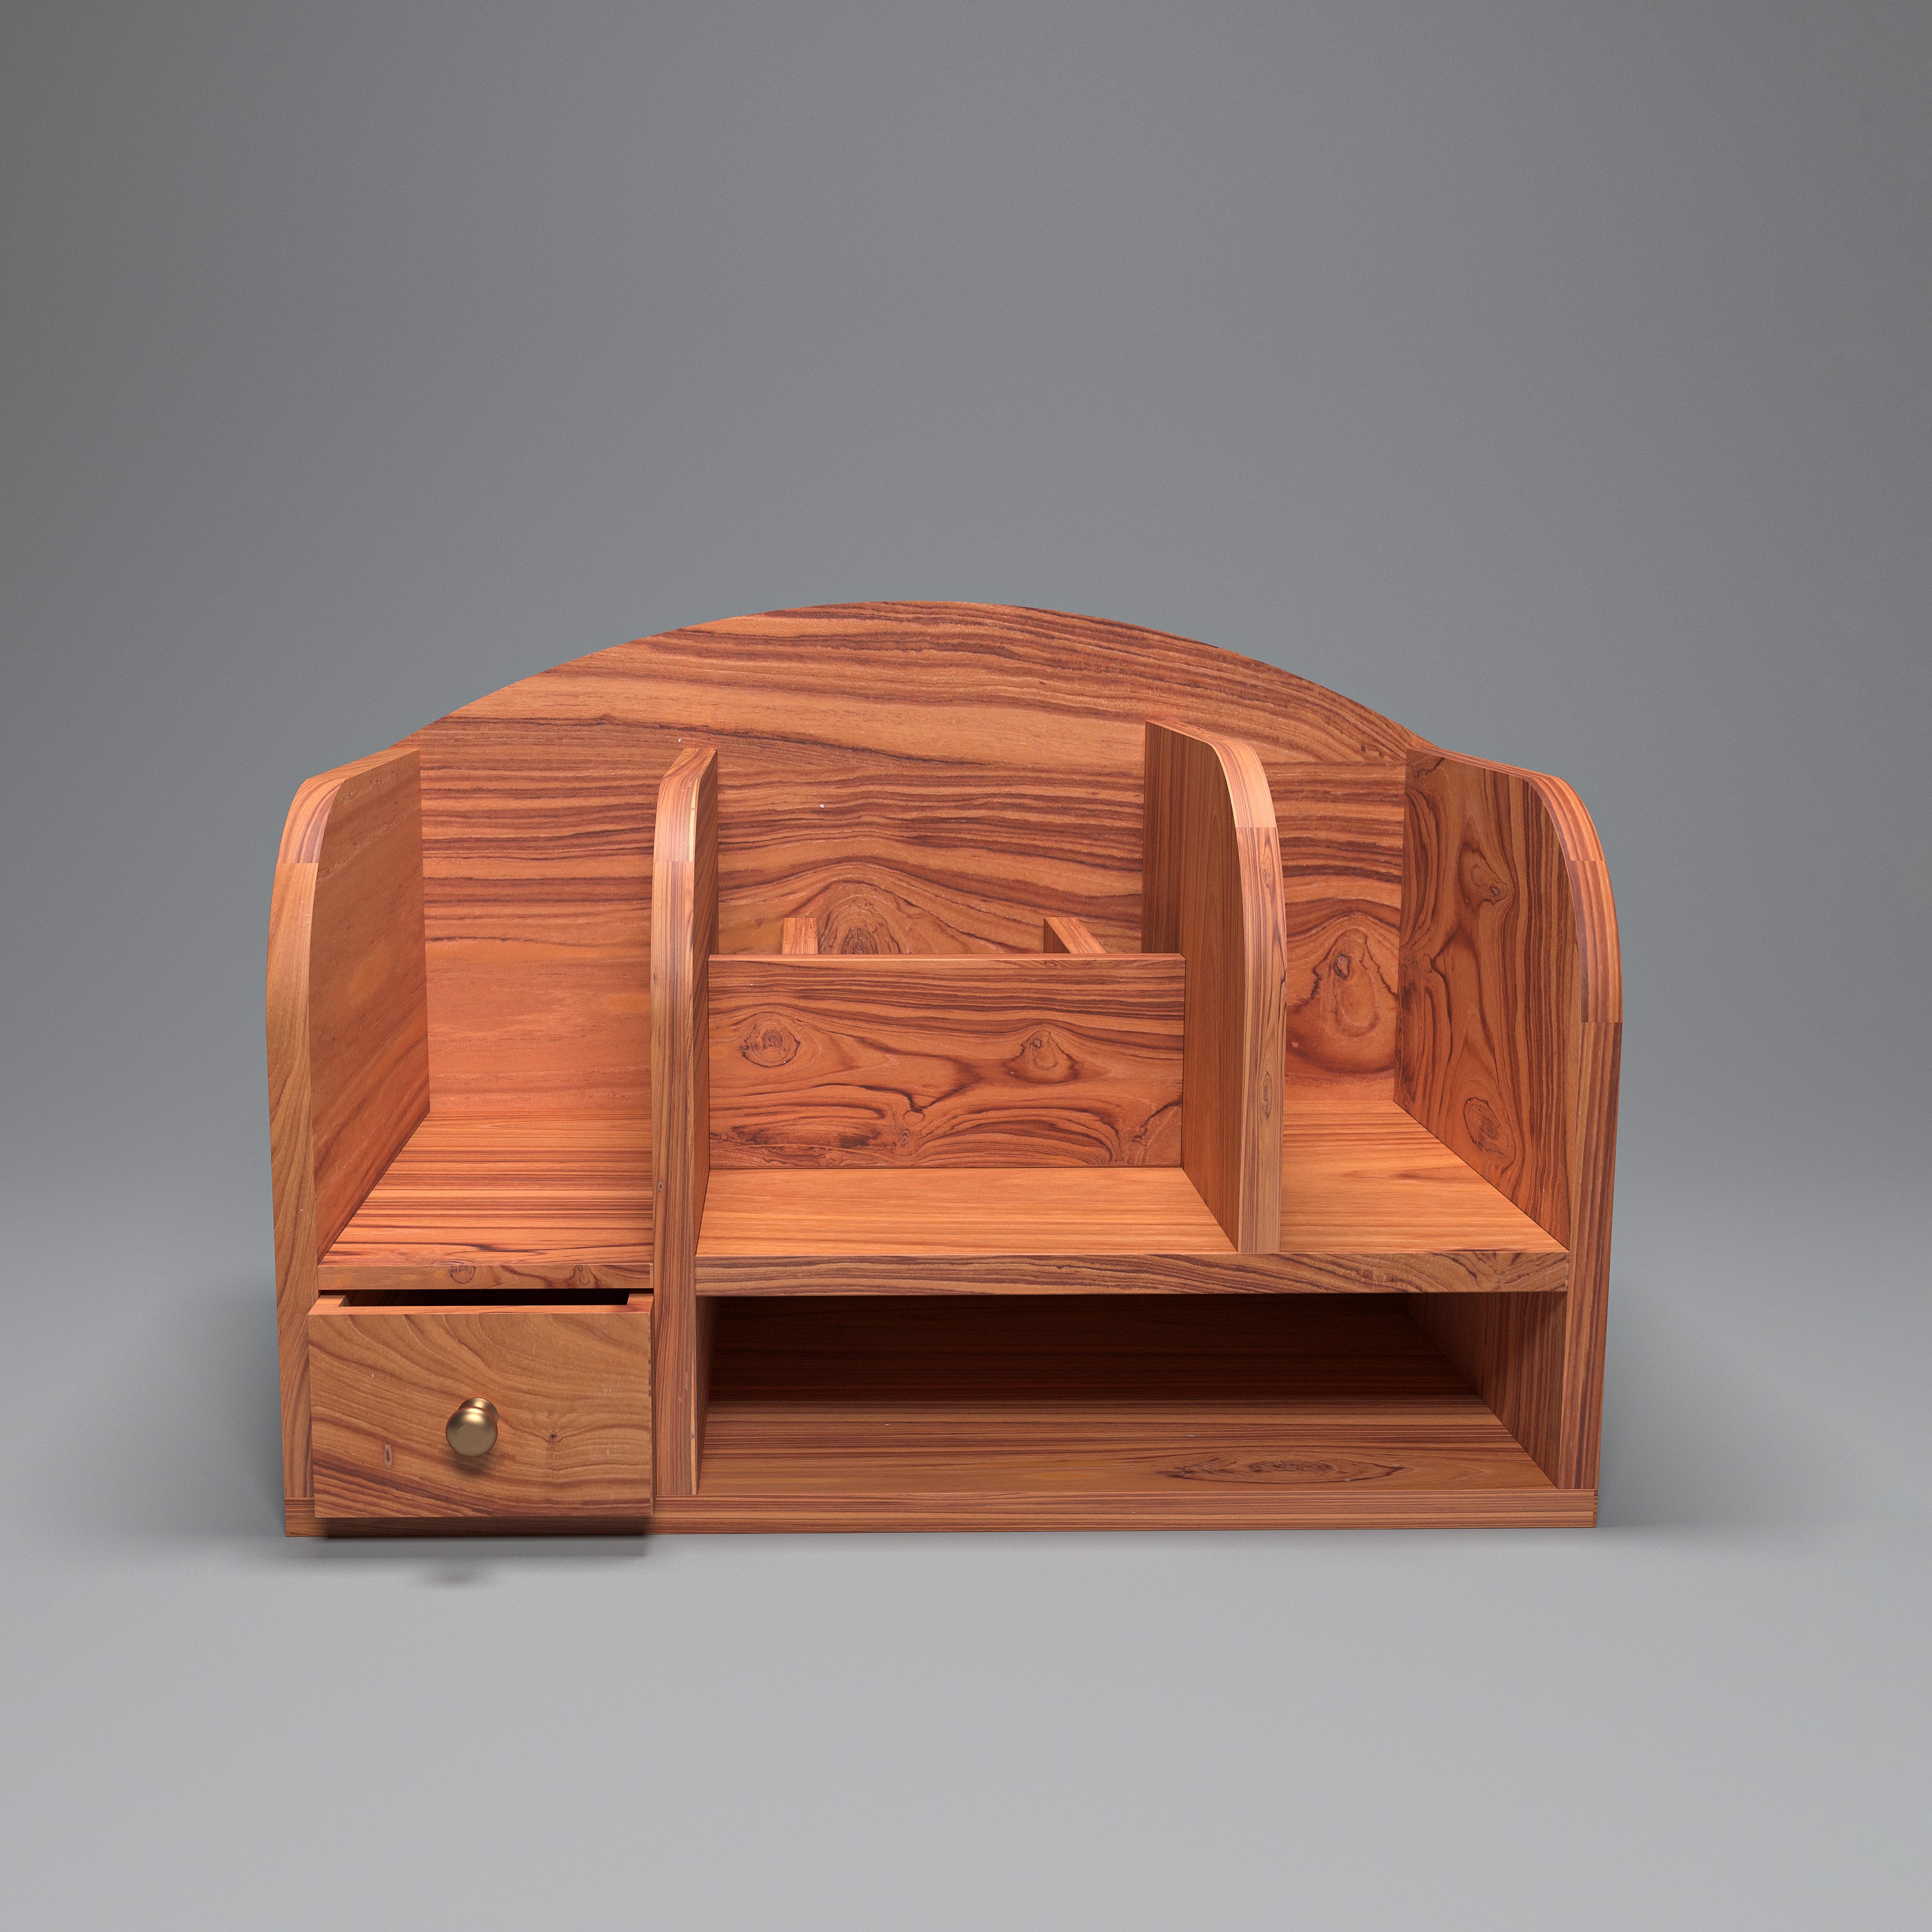 Wooden Arch-shaped Multipurpose Organizer Desk Organizer